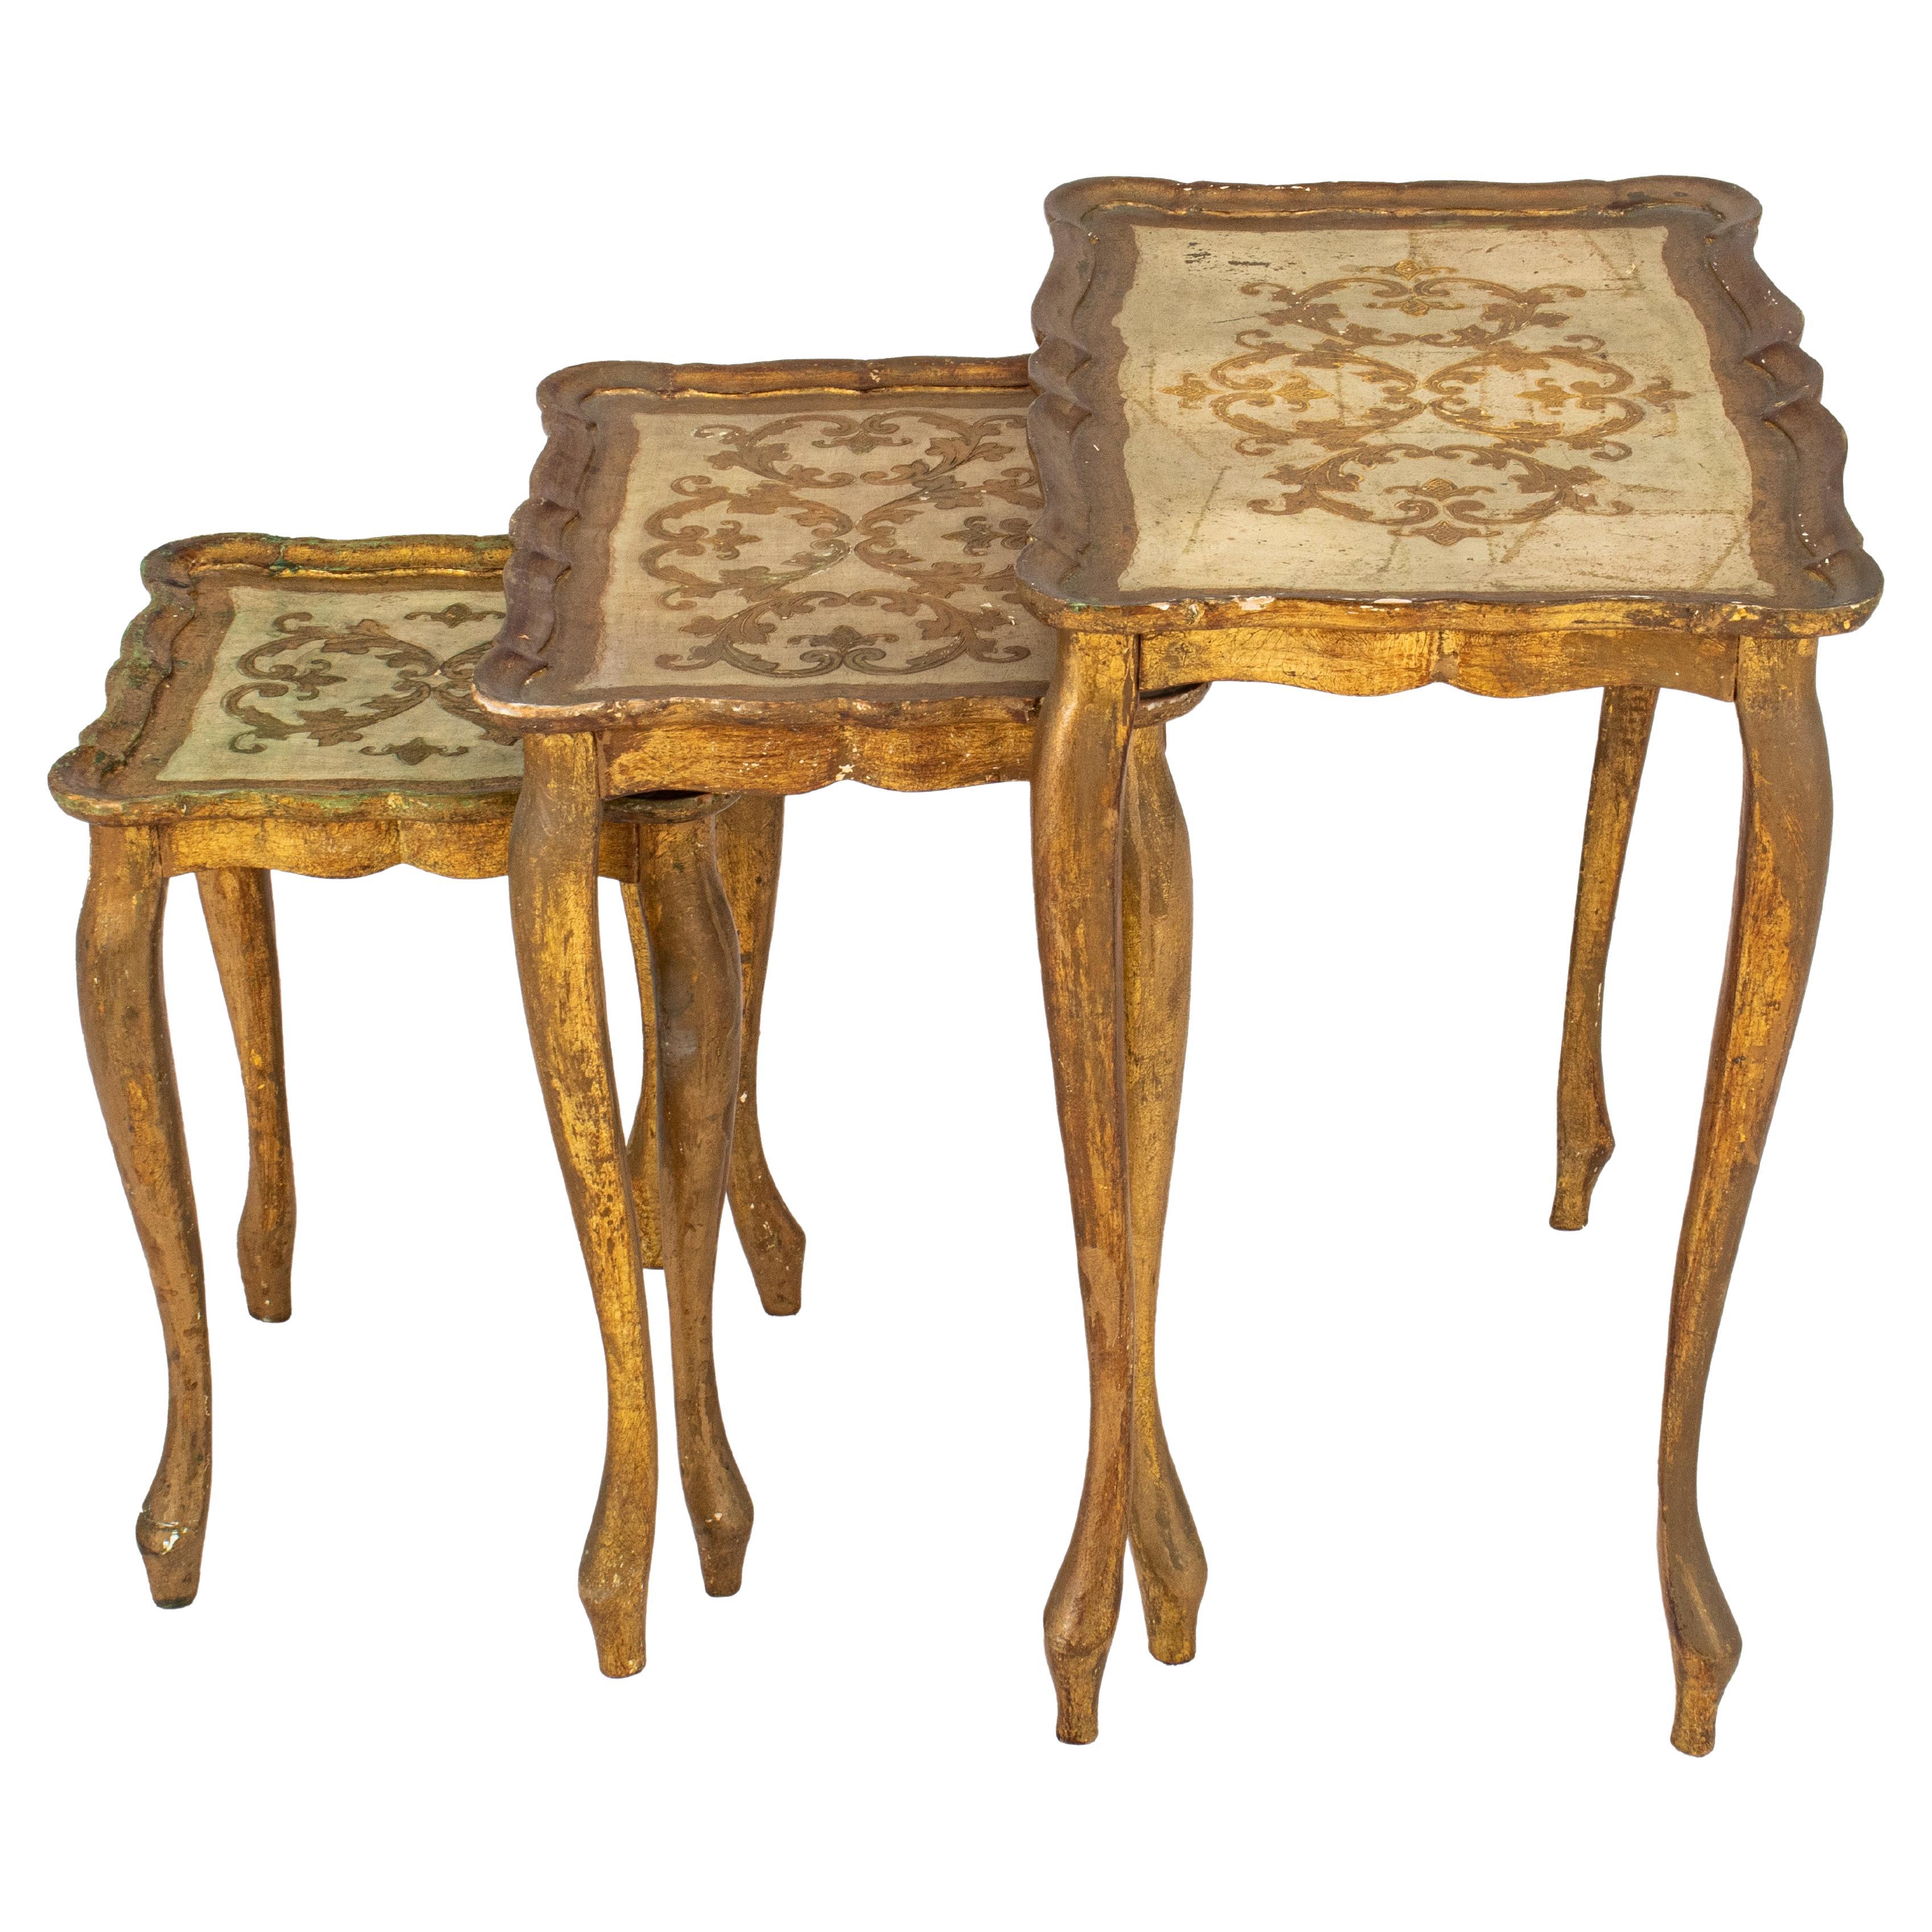 Stapeltische im venezianischen Rokoko-Stil, 3 Tische